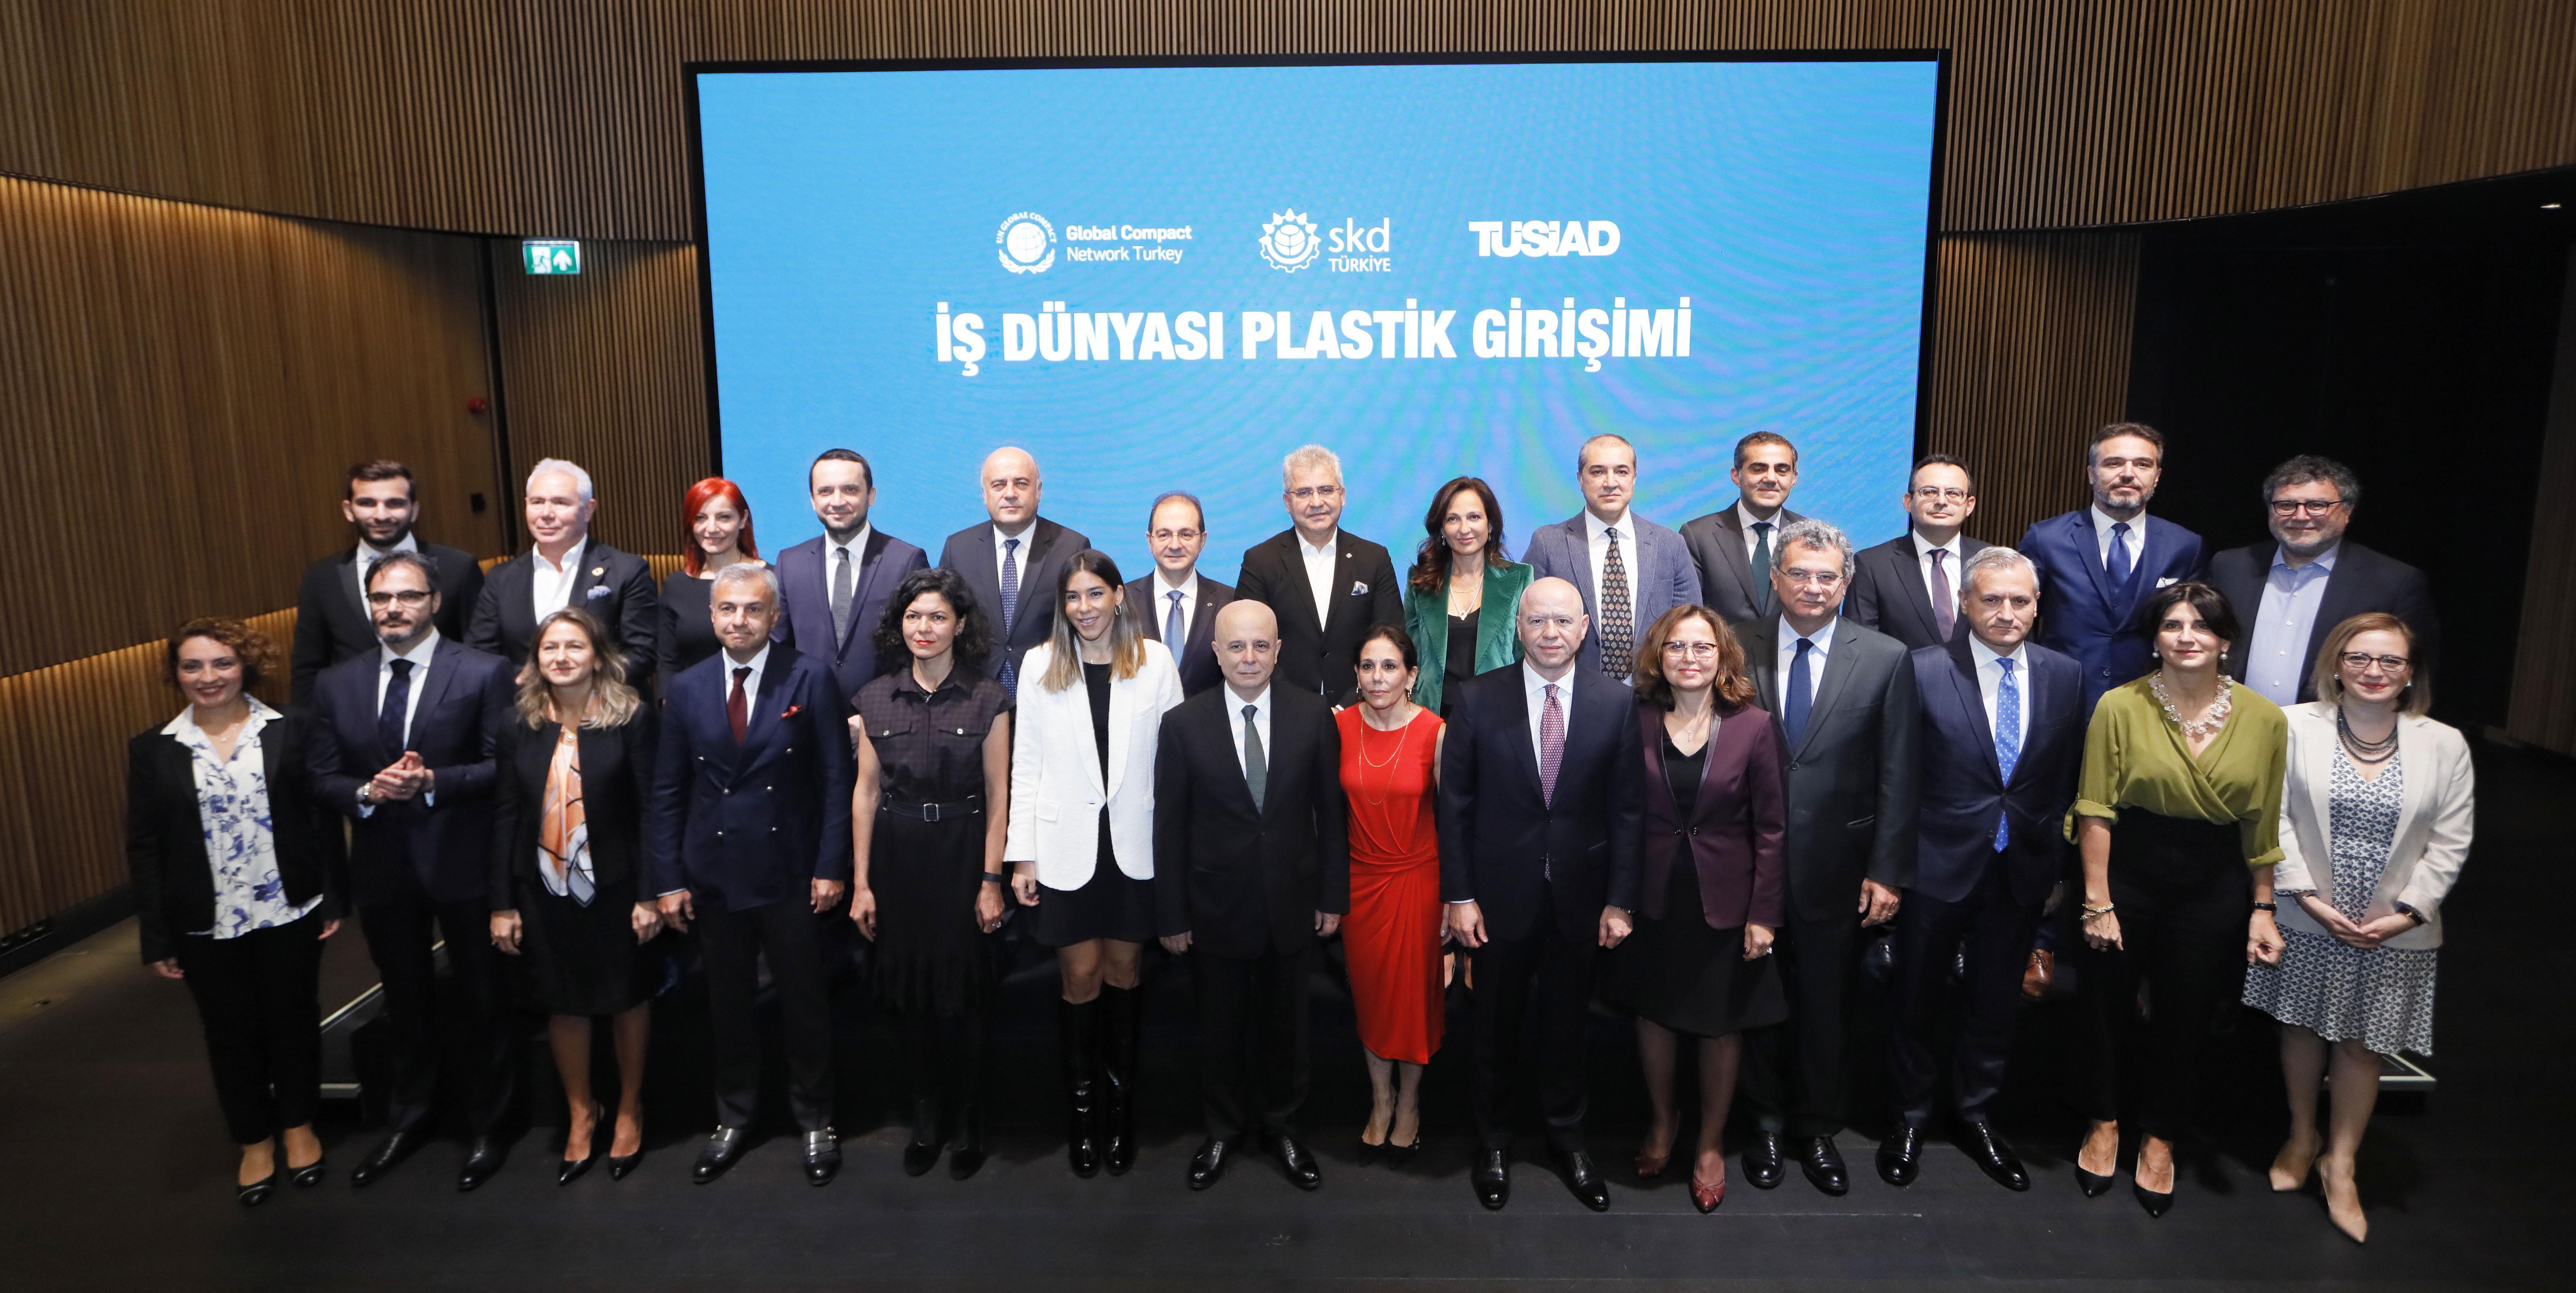 İş dünyasının devleri plastik kirliliğine karşı güçlerini birleştirdi